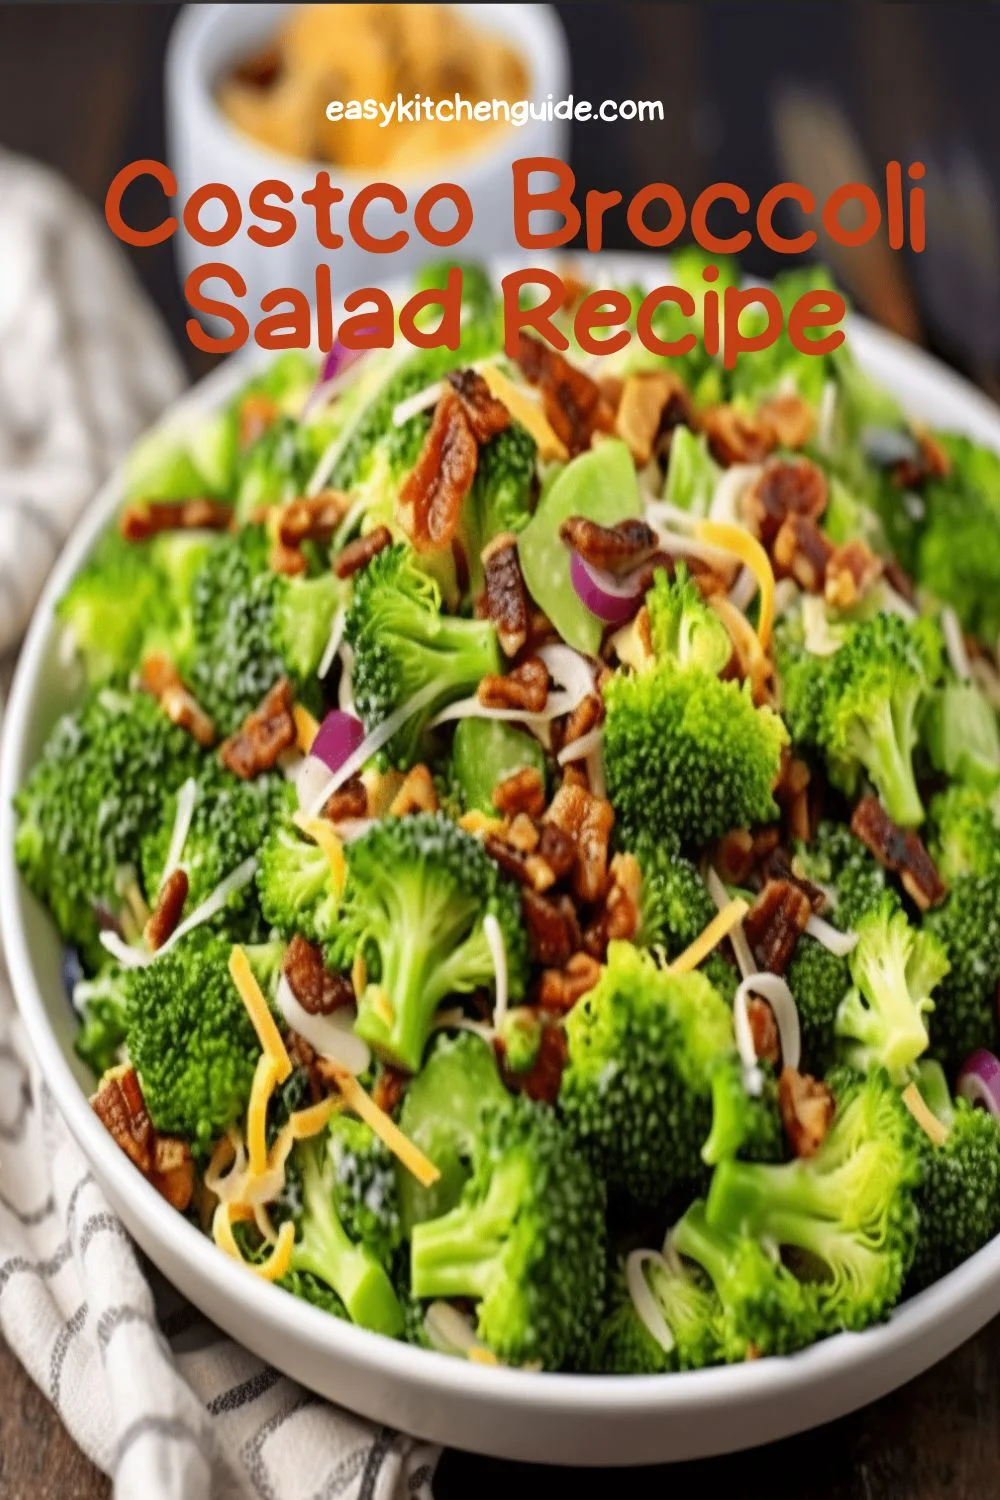 Costco Broccoli Salad Recipe